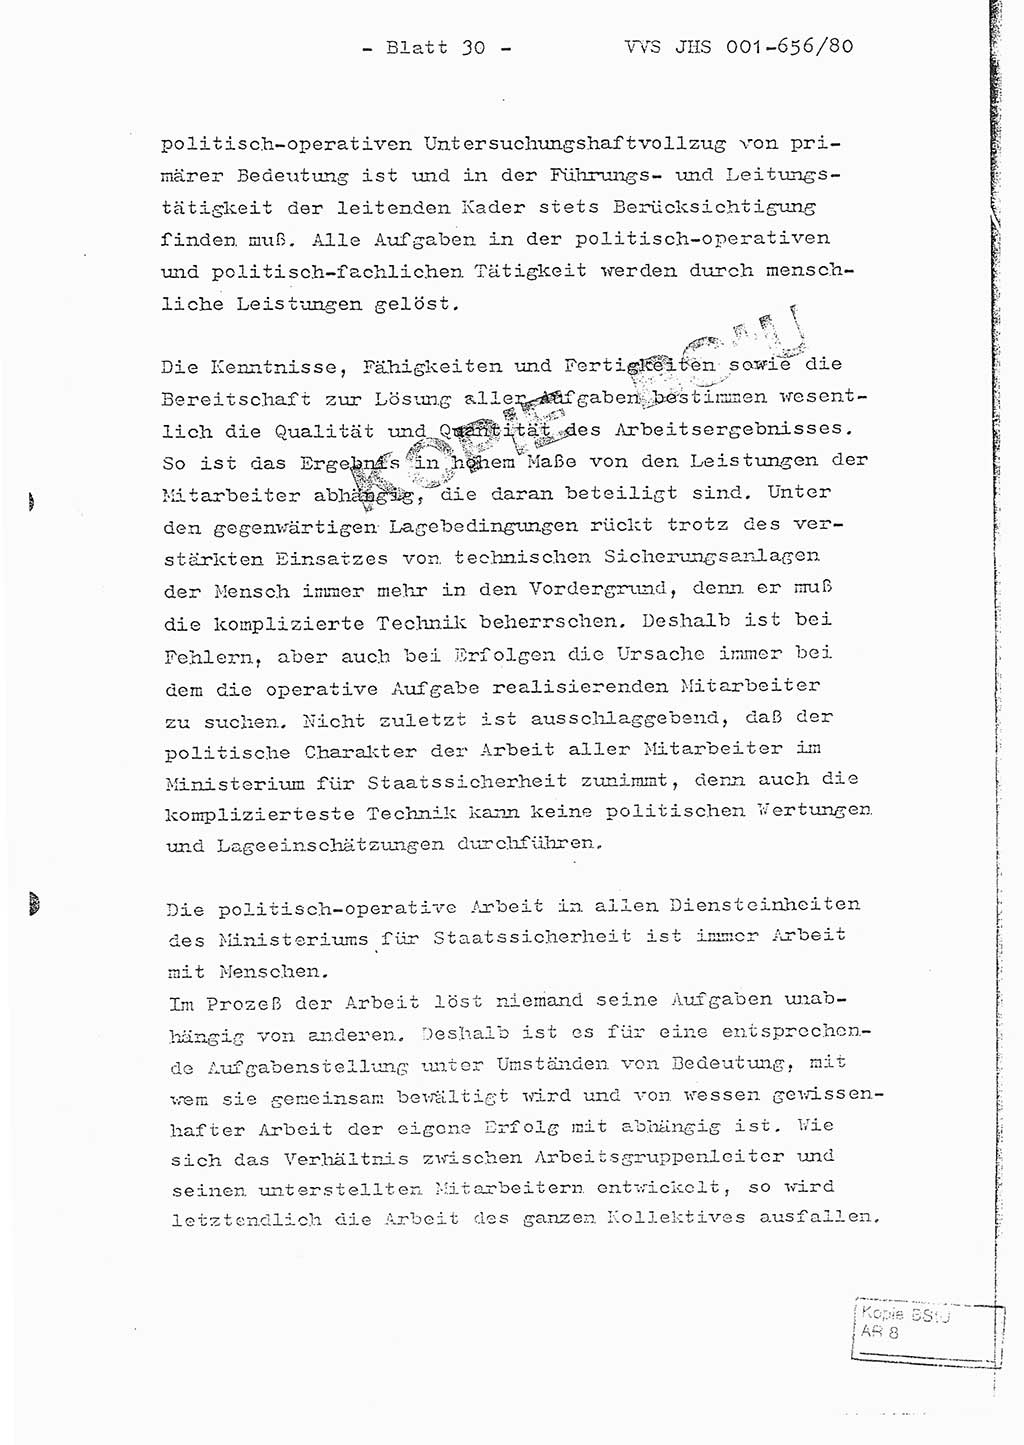 Fachschulabschlußarbeit Unterleutnant Christian Kätzel (Abt. ⅩⅣ), Ministerium für Staatssicherheit (MfS) [Deutsche Demokratische Republik (DDR)], Juristische Hochschule (JHS), Vertrauliche Verschlußsache (VVS) 001-656/80, Potsdam 1980, Blatt 30 (FS-Abschl.-Arb. MfS DDR JHS VVS 001-656/80 1980, Bl. 30)